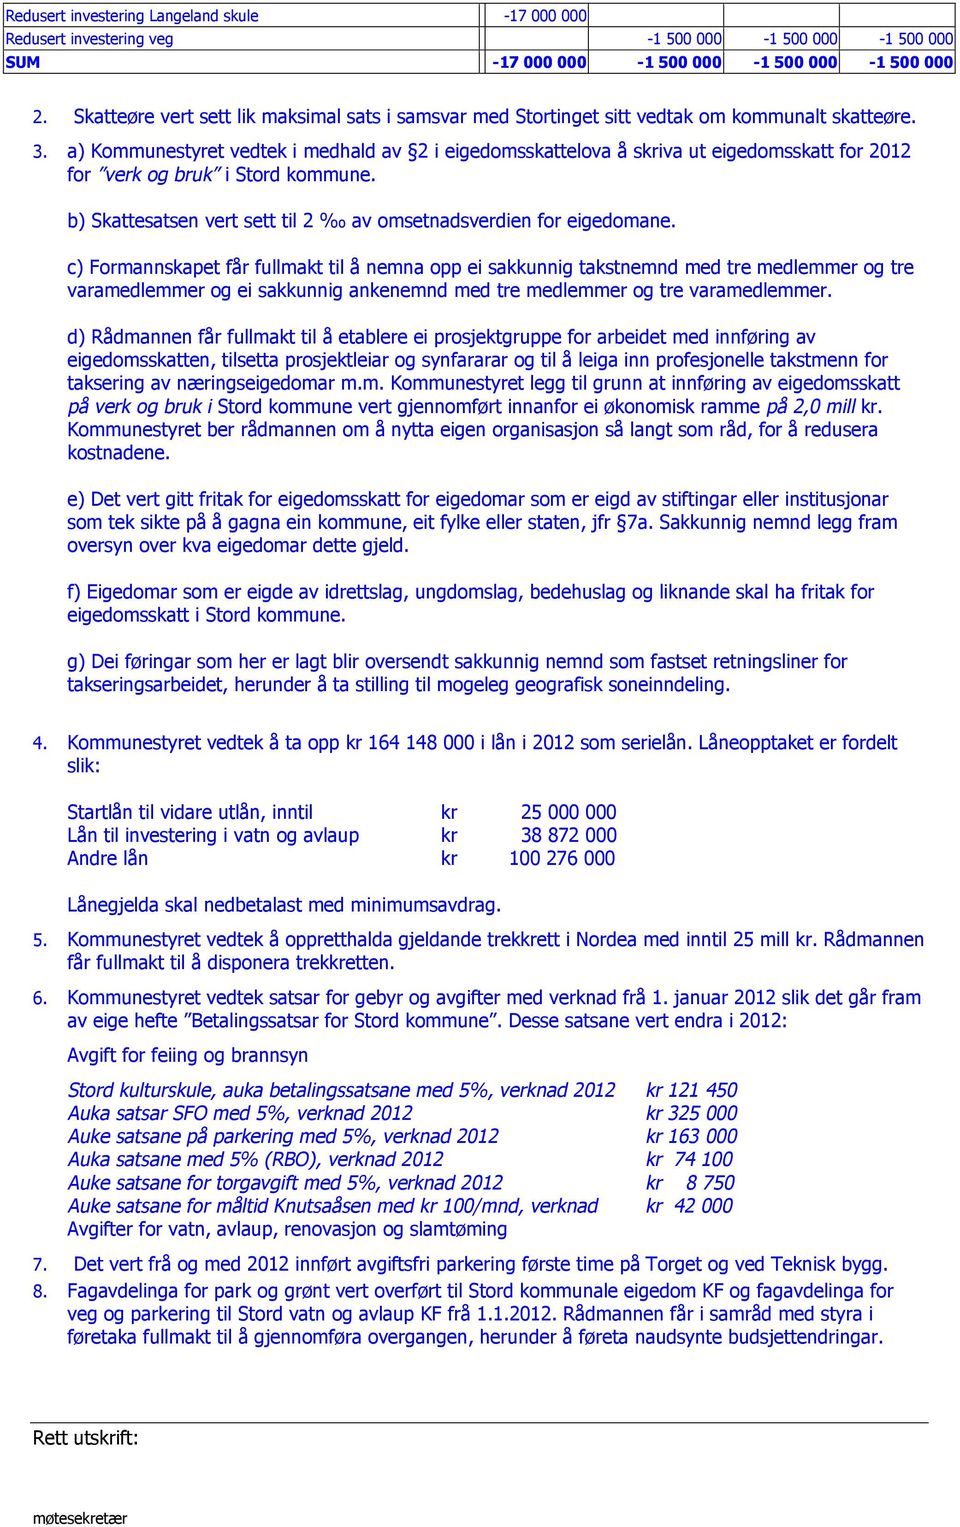 a) Kommunestyret vedtek i medhald av 2 i eigedomsskattelova å skriva ut eigedomsskatt for 2012 for verk og bruk i Stord kommune. b) Skattesatsen vert sett til 2 av omsetnadsverdien for eigedomane.